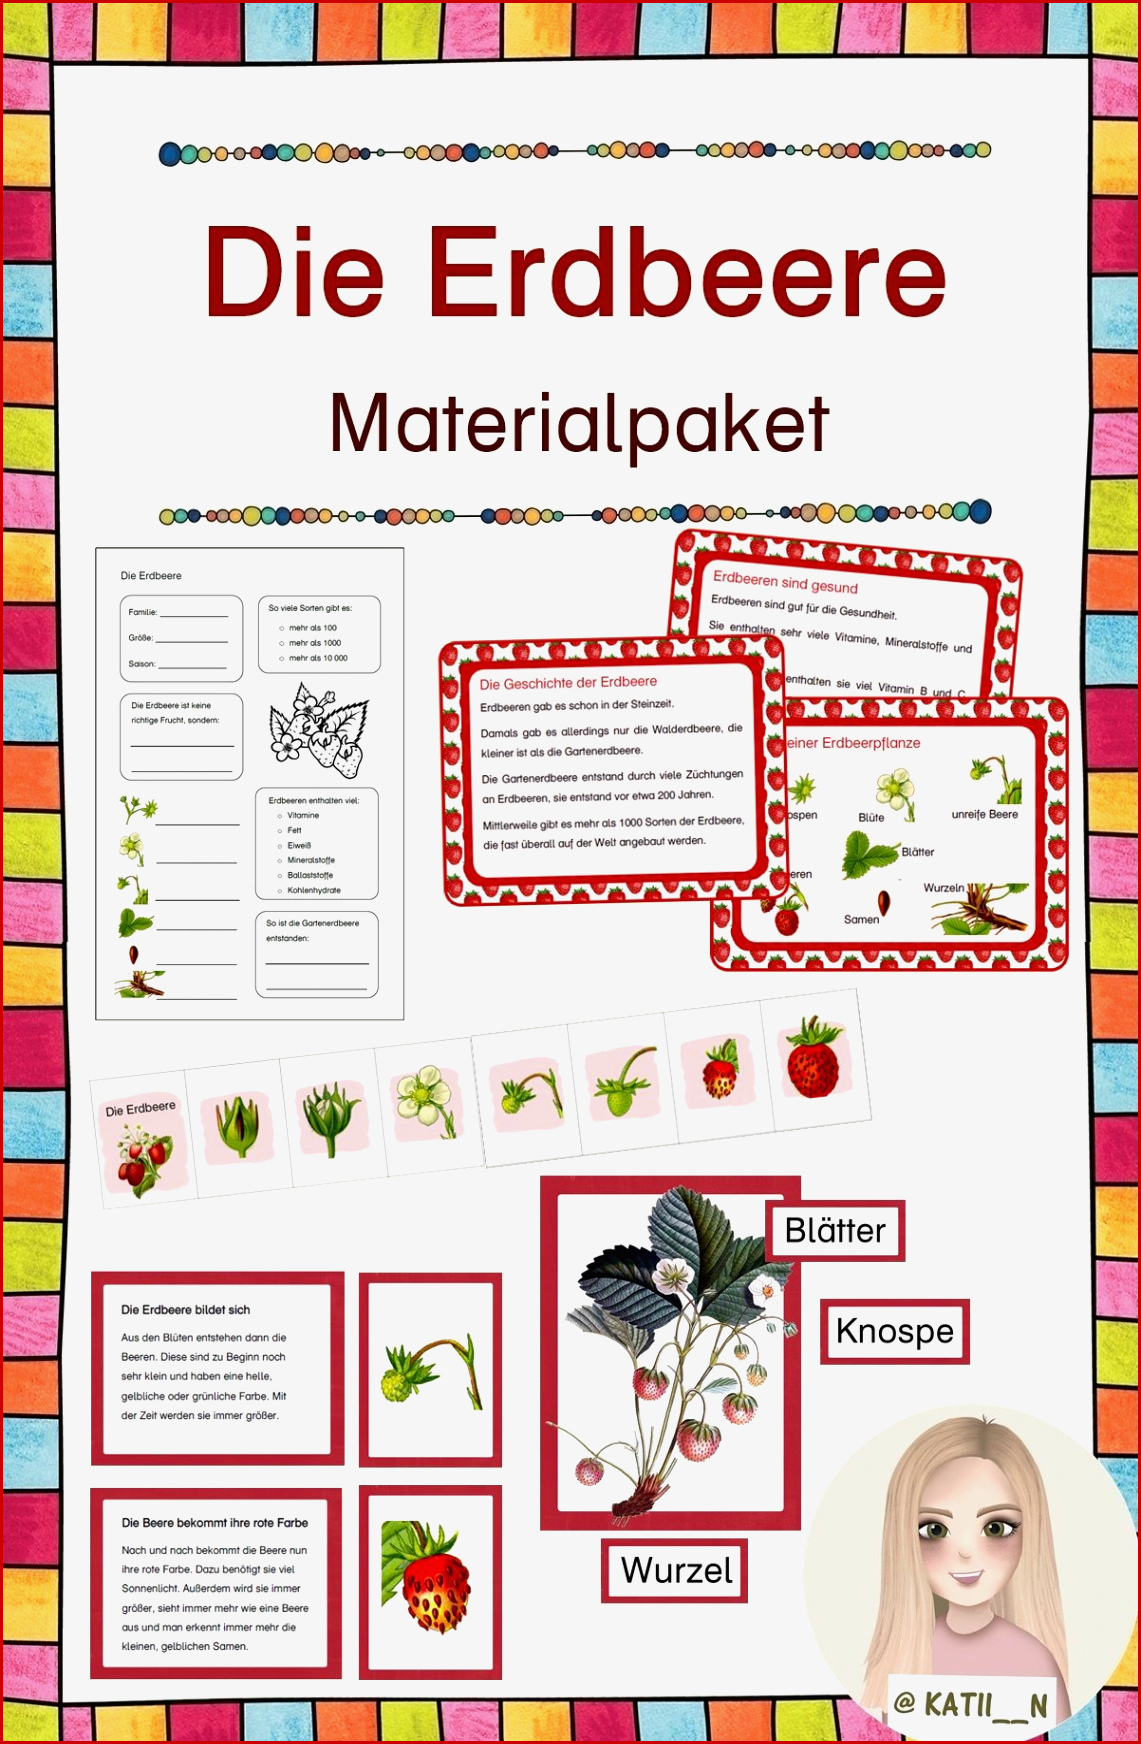 Die Erdbeere Materialpaket – Unterrichtsmaterial Im Fach